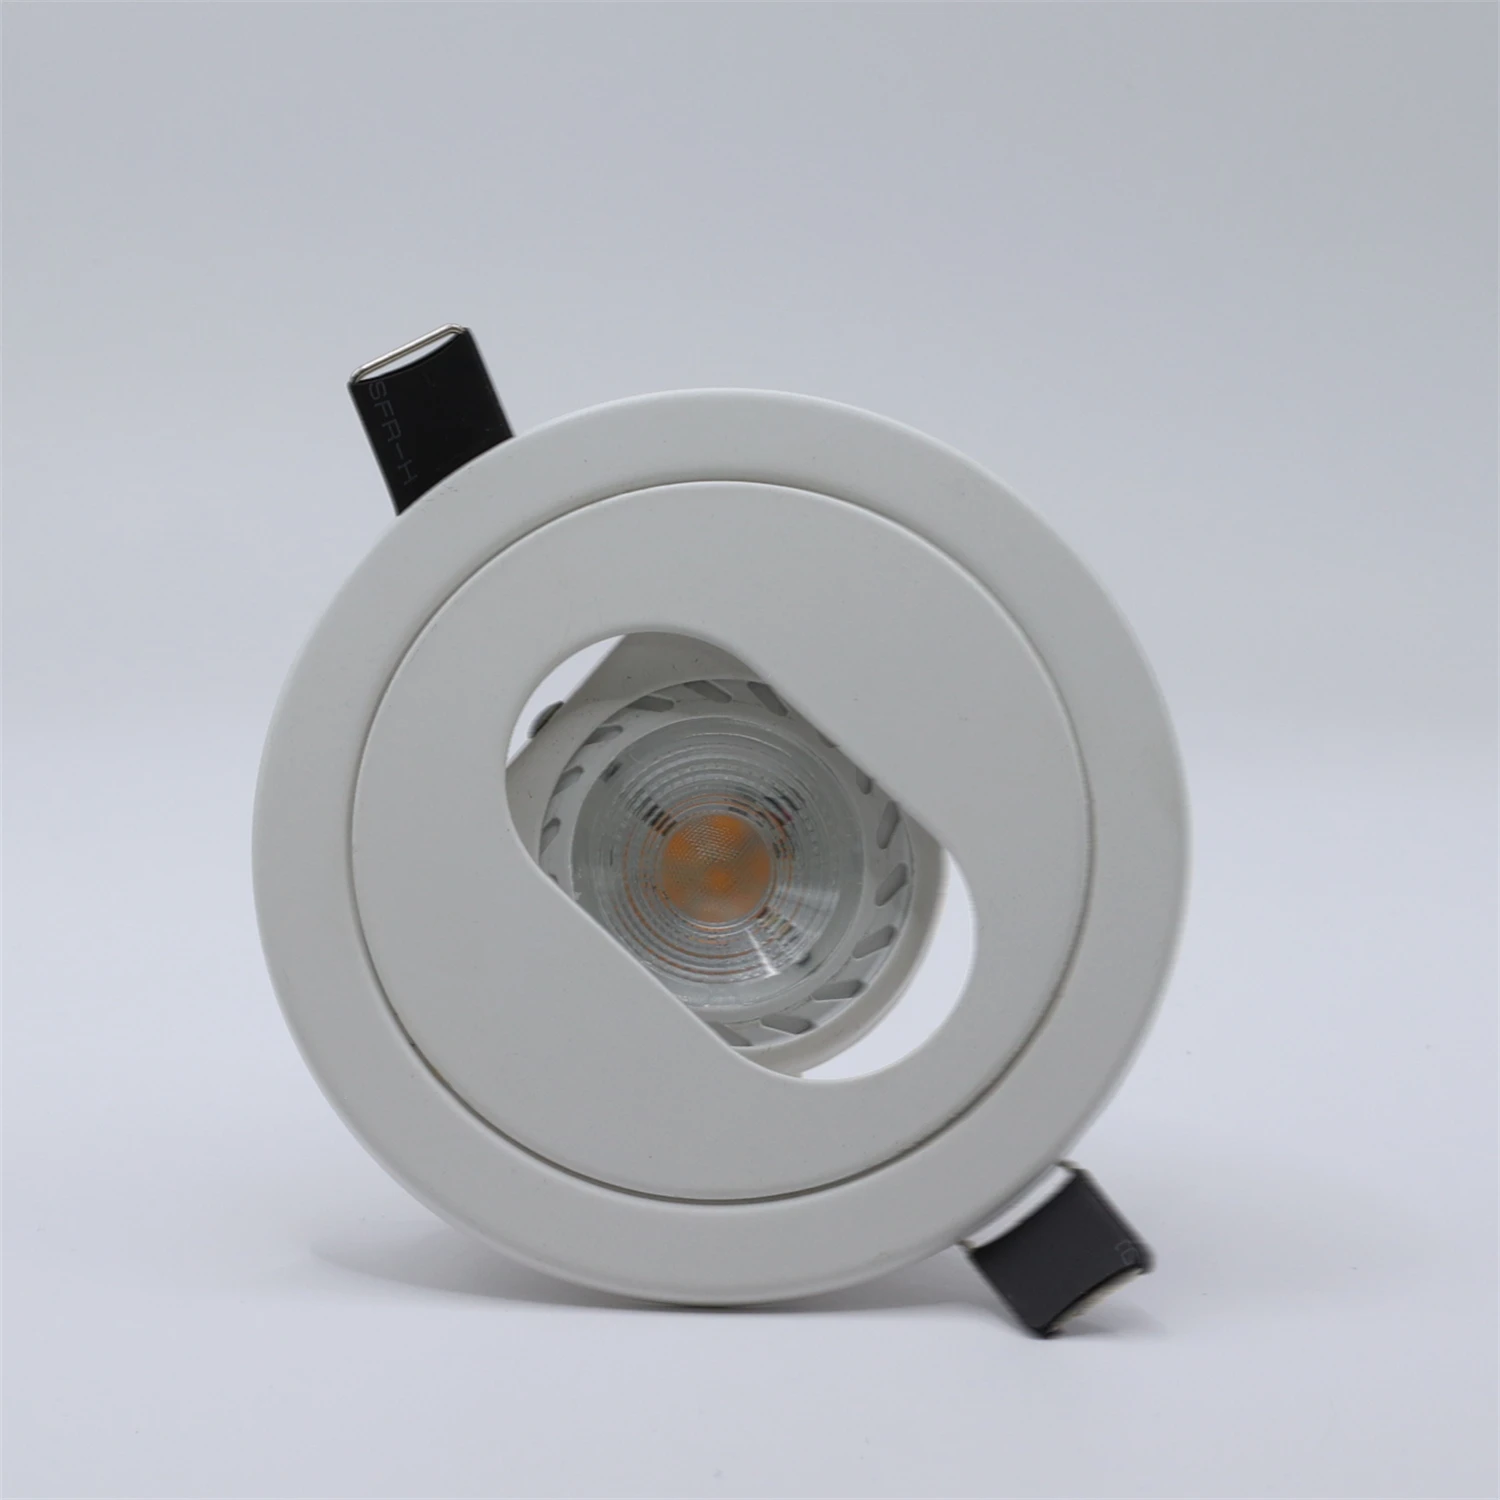 6 Вт светодиодный прожектор для глазного яблока С лампочкой GU10, рамка для установки встраиваемого светильника, декоративная лампа MR16 Изображение 2